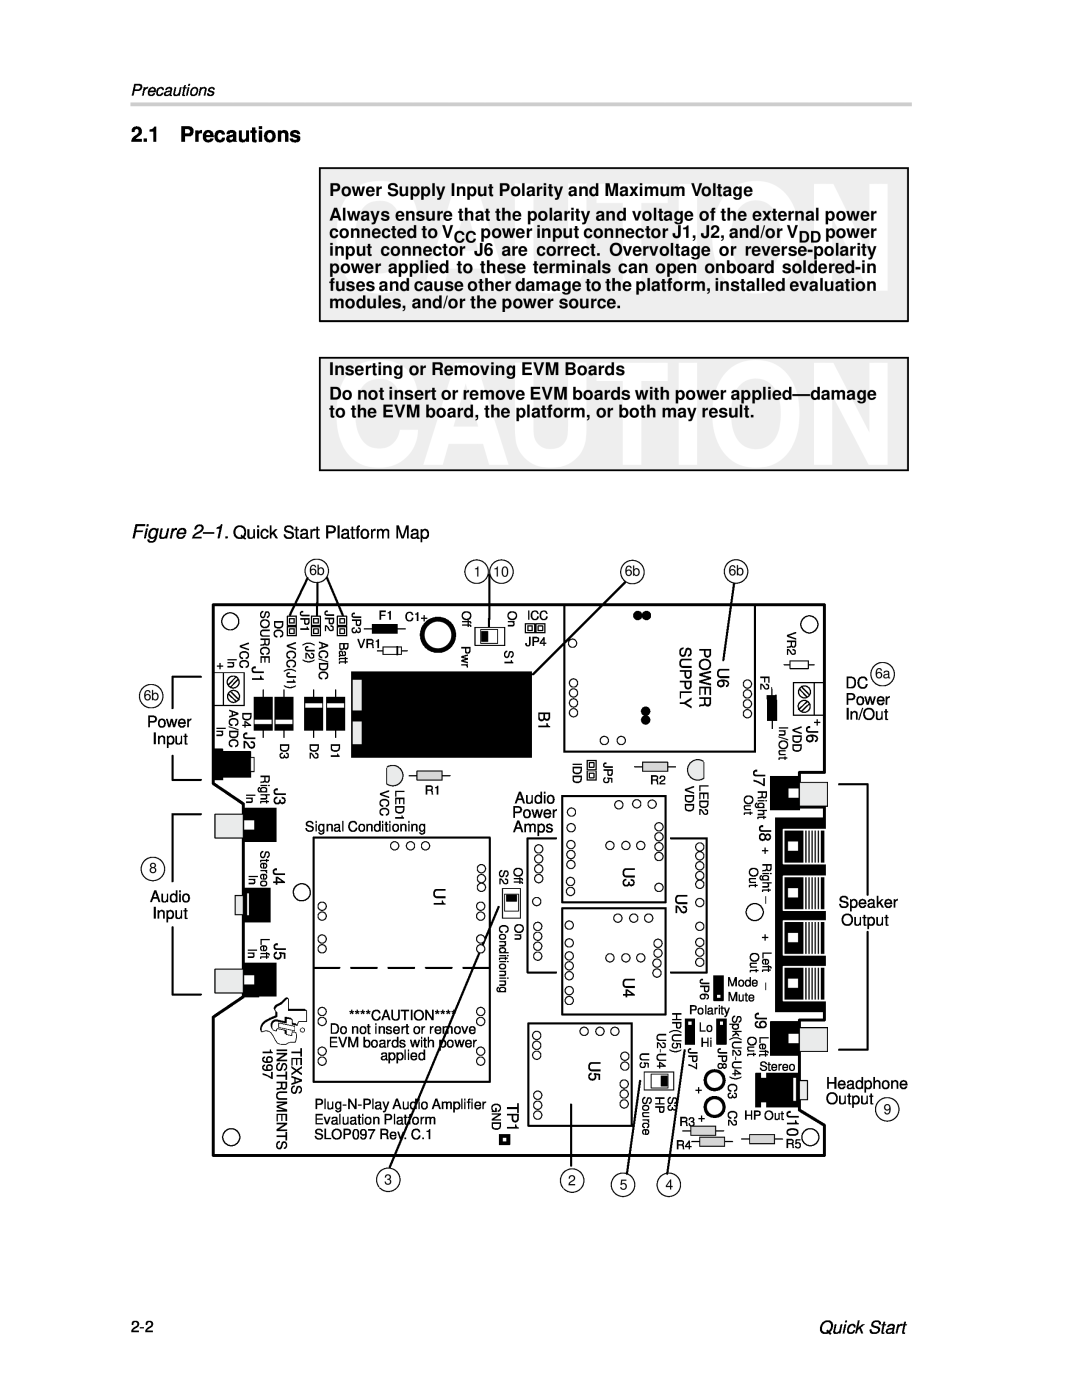 Texas Instruments TPA102 MSOP manual Precautions, Quick Start 